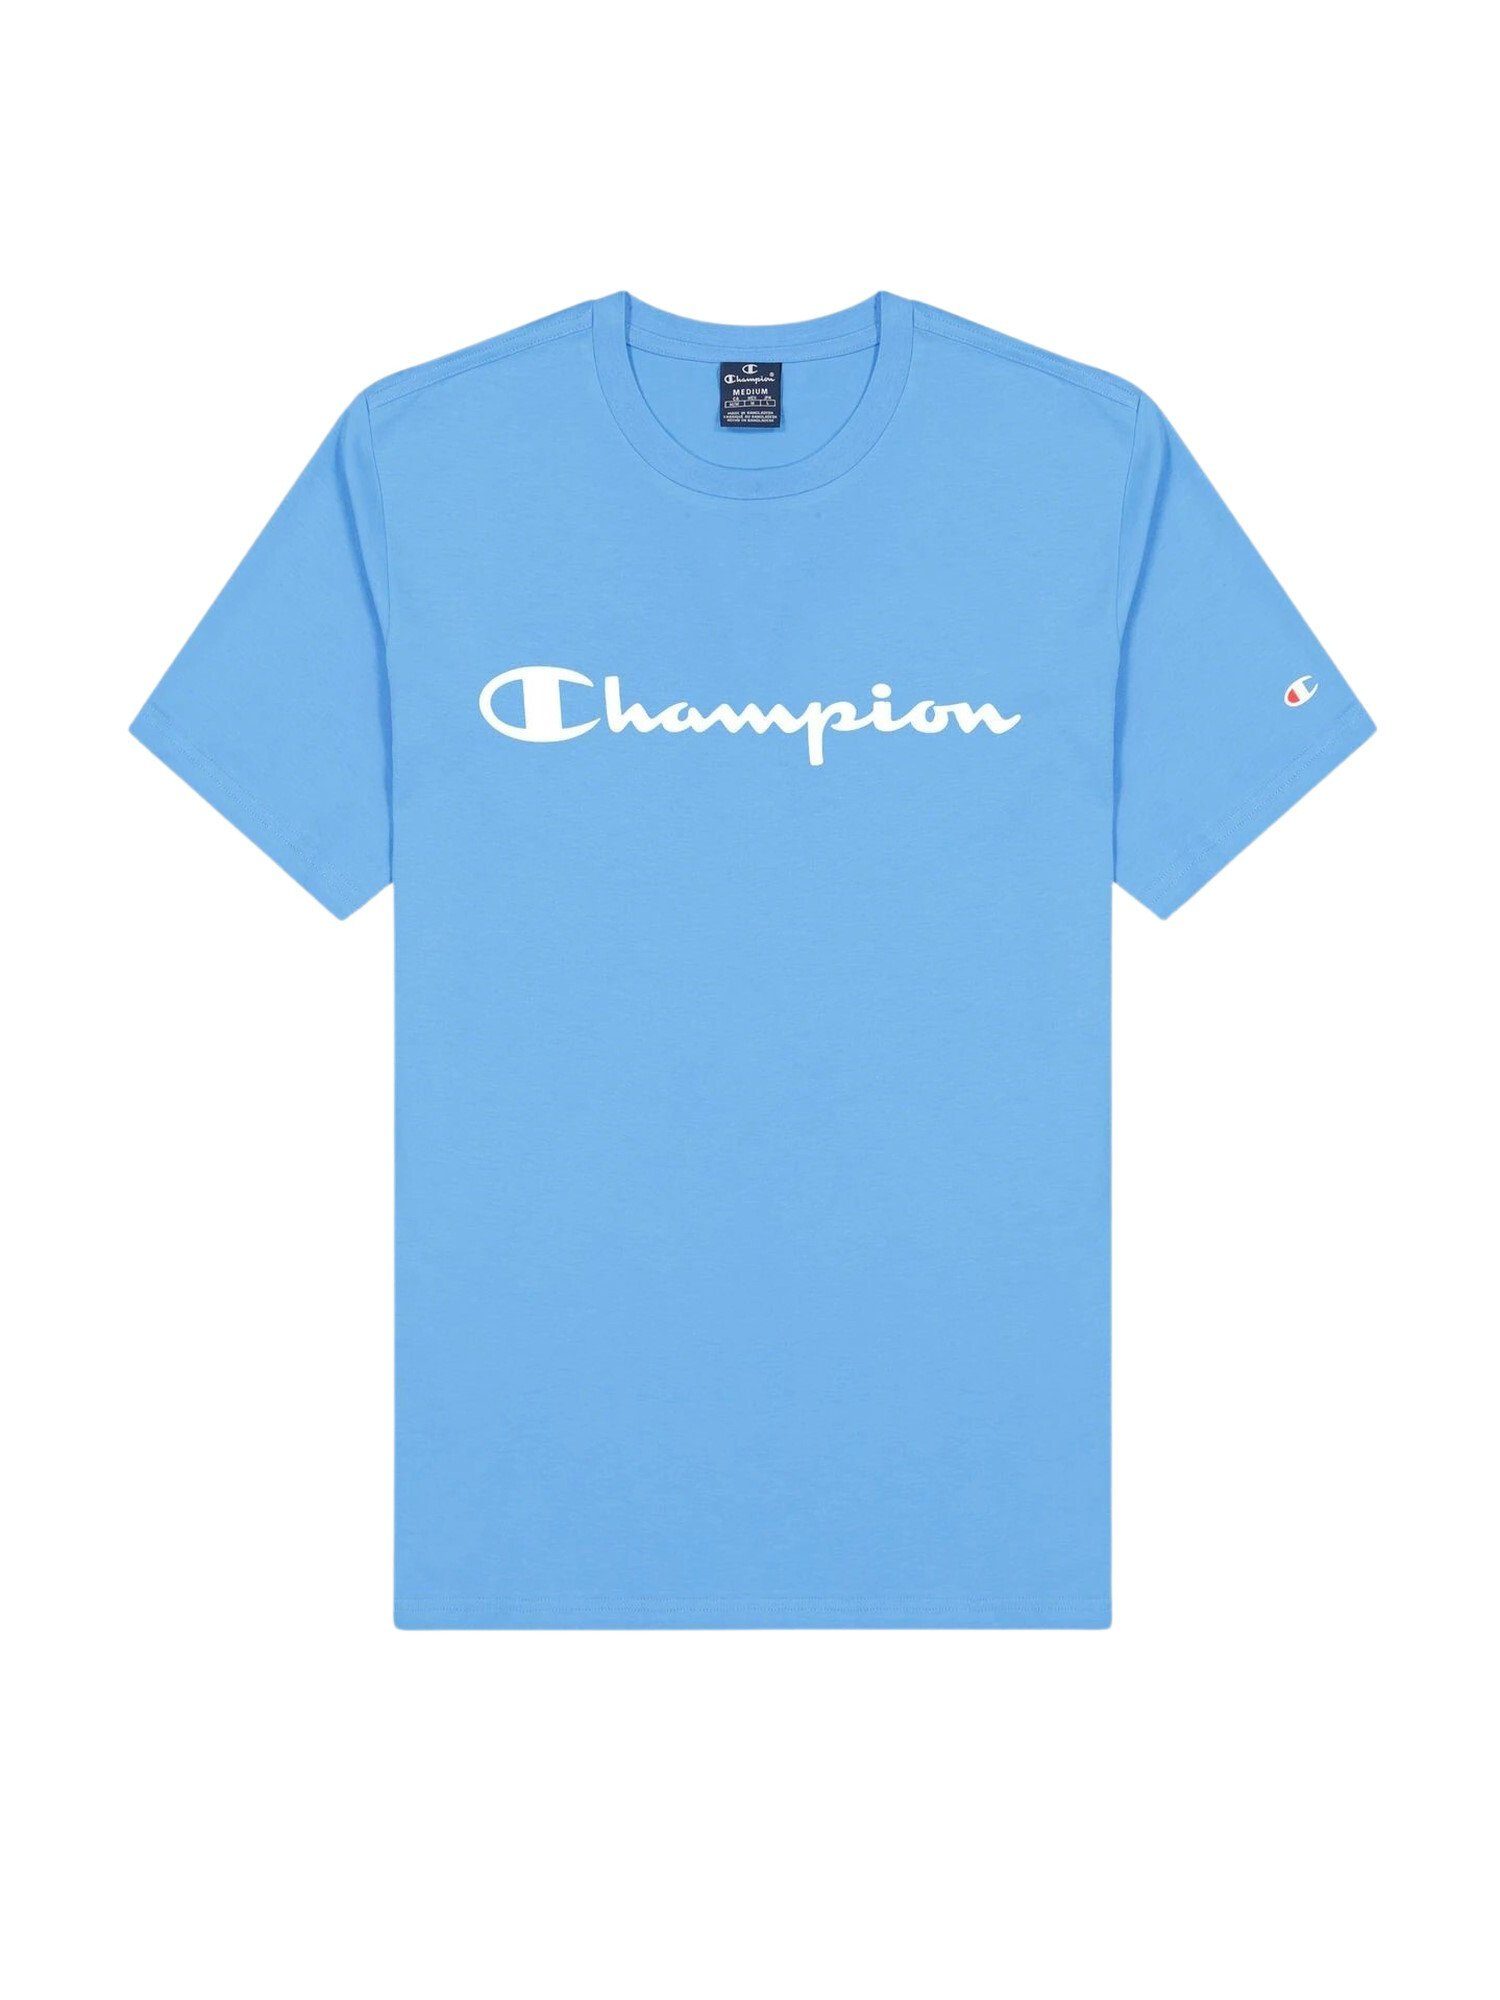 Champion T-Shirt mit Shirt aus Rundhals-T-Shirt Baumwolle hellblau